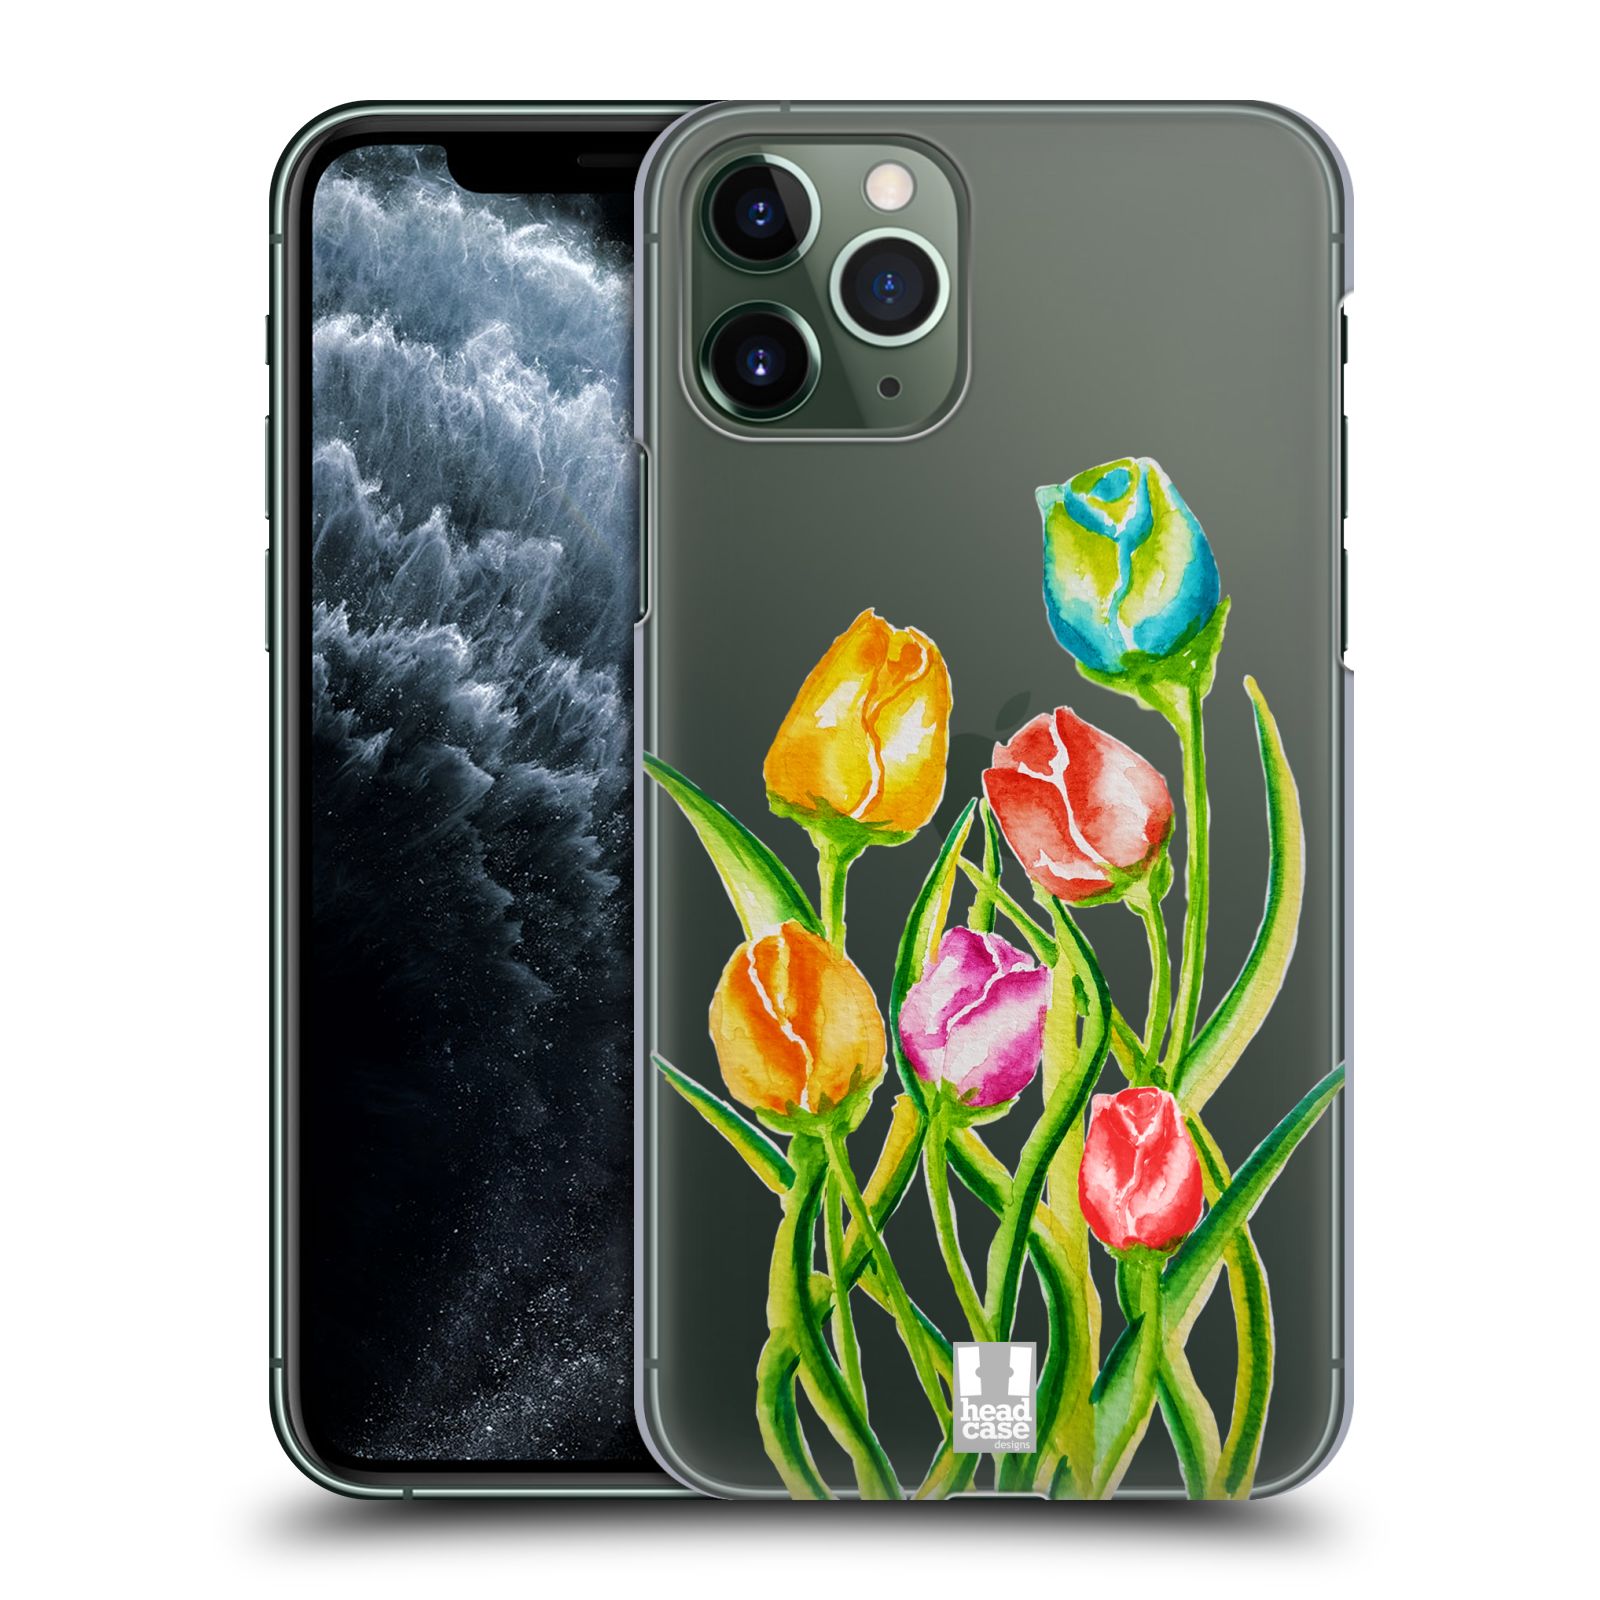 Pouzdro na mobil Apple Iphone 11 PRO - HEAD CASE - Květina Tulipán vodní barvy